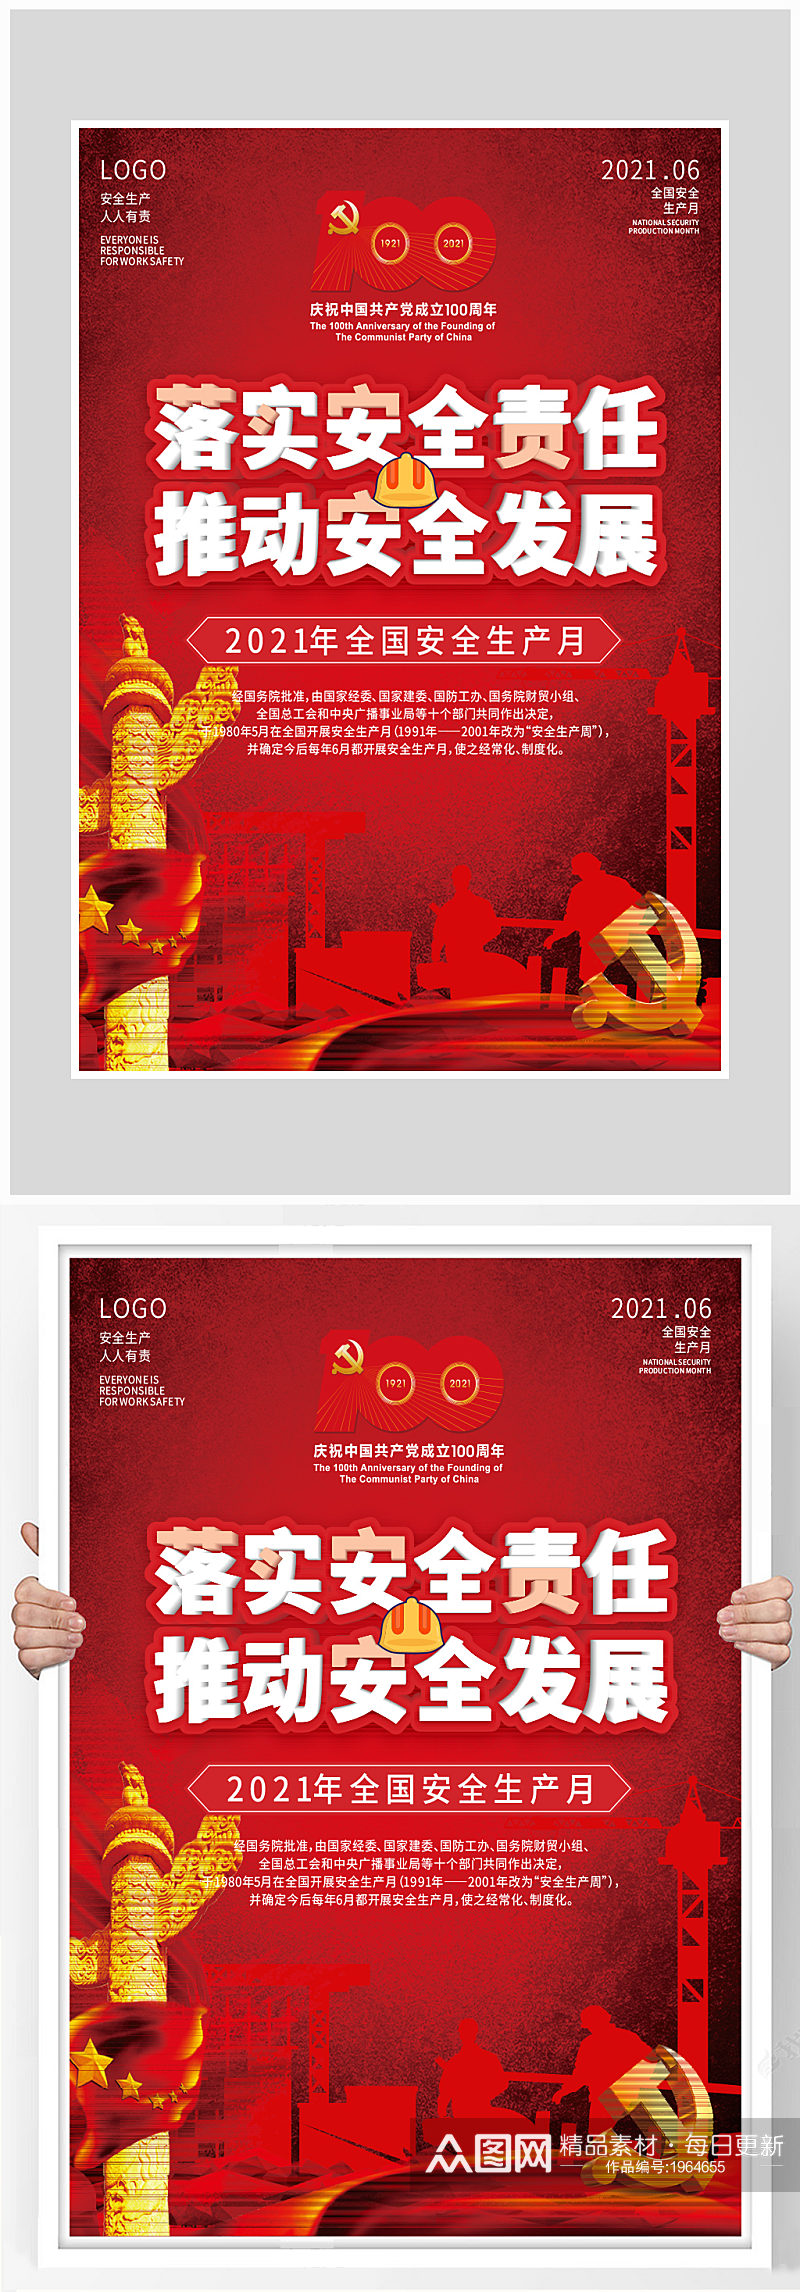 创意红色安全生产发展海报设计素材